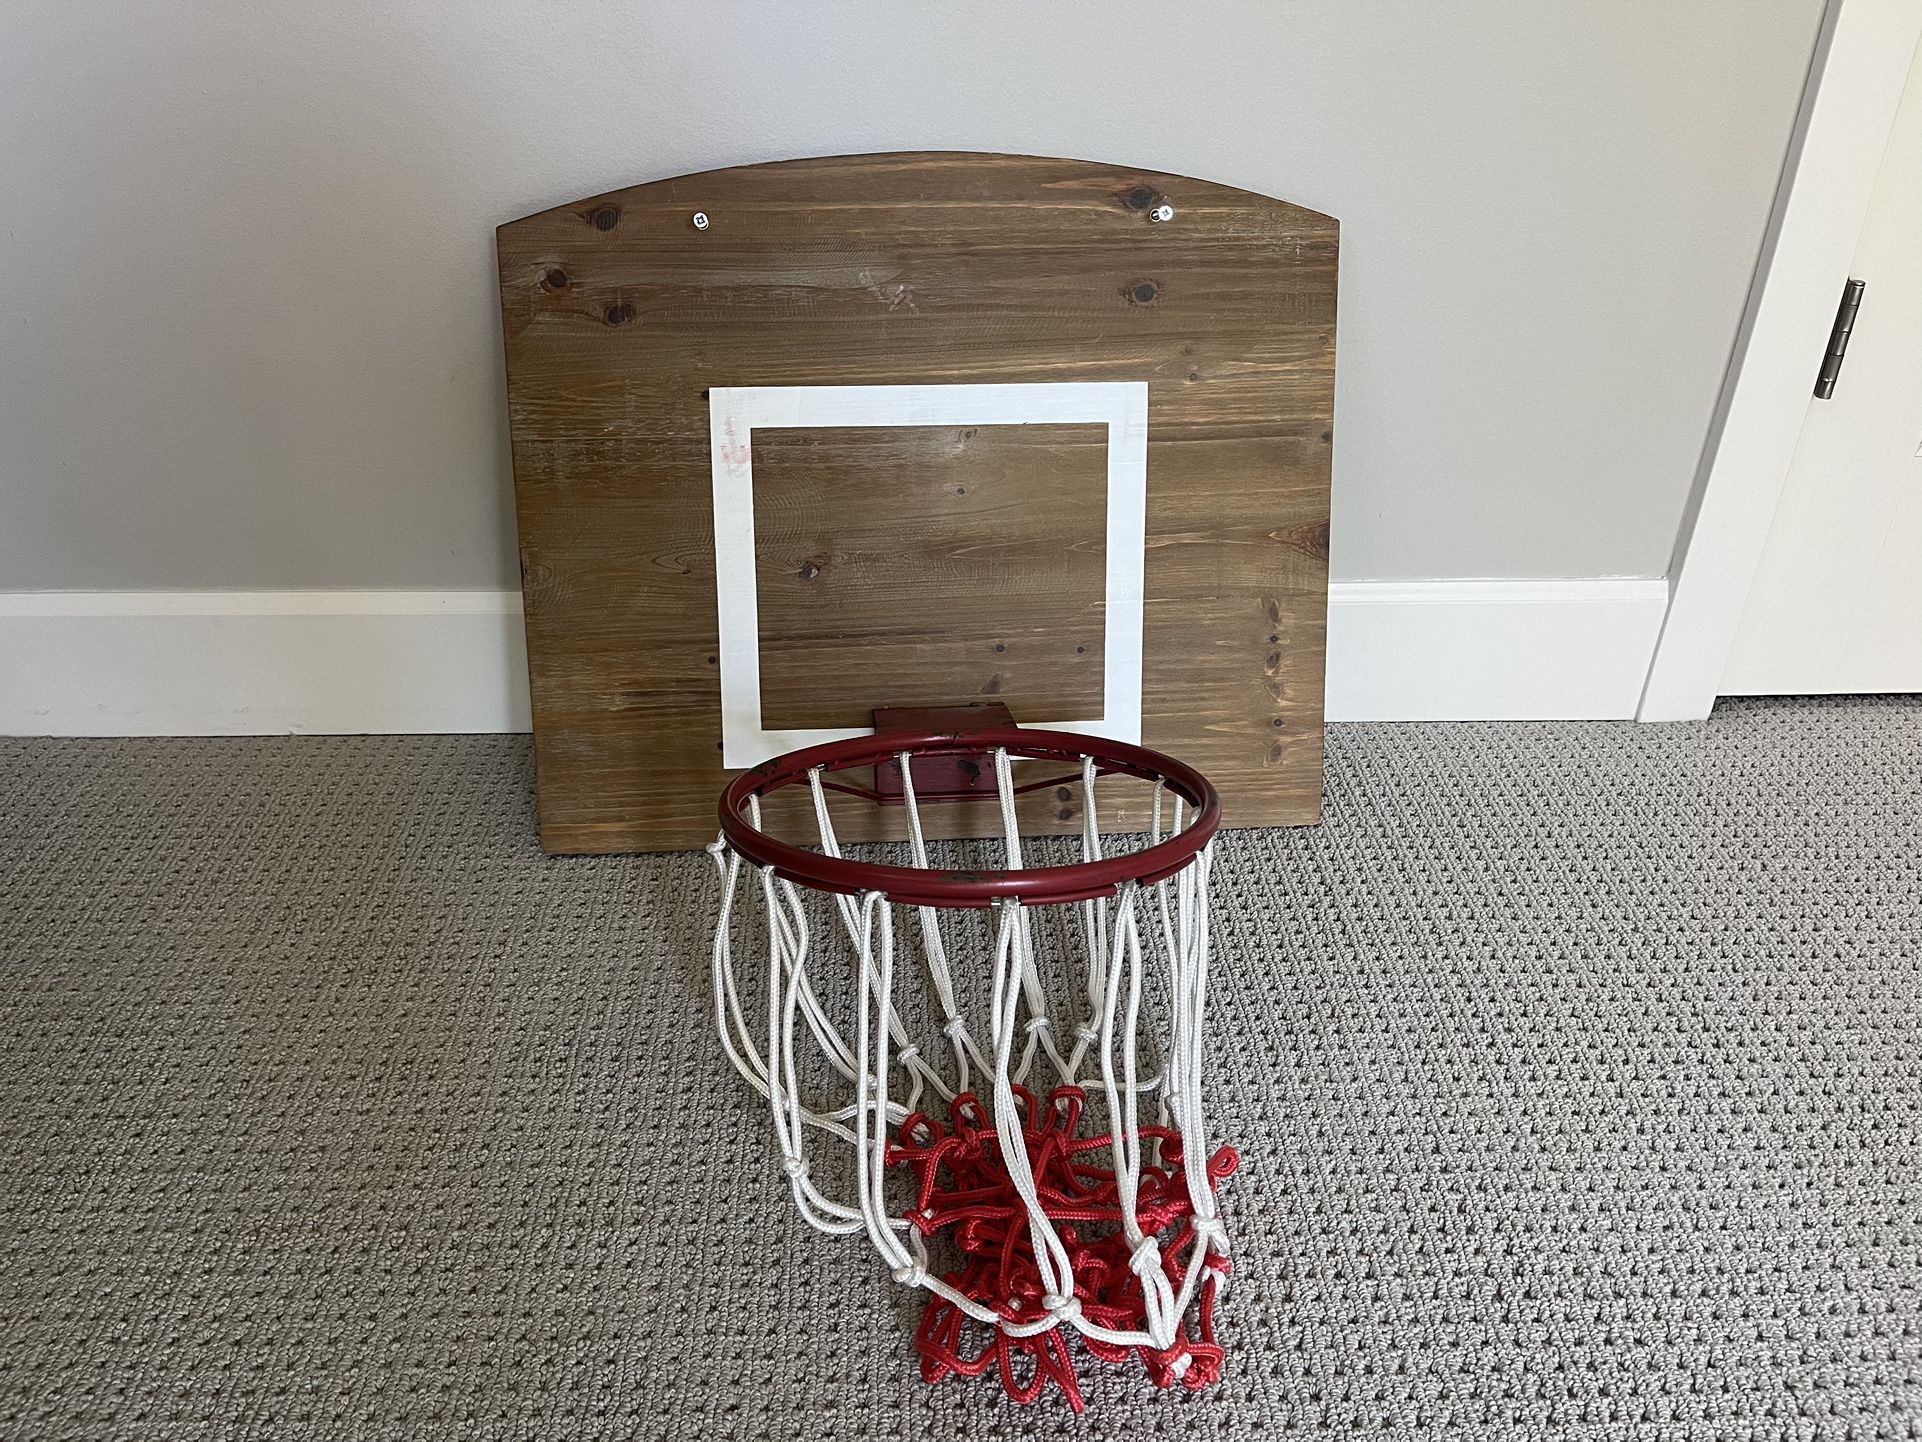 Wall Mounted Basketball Hoop